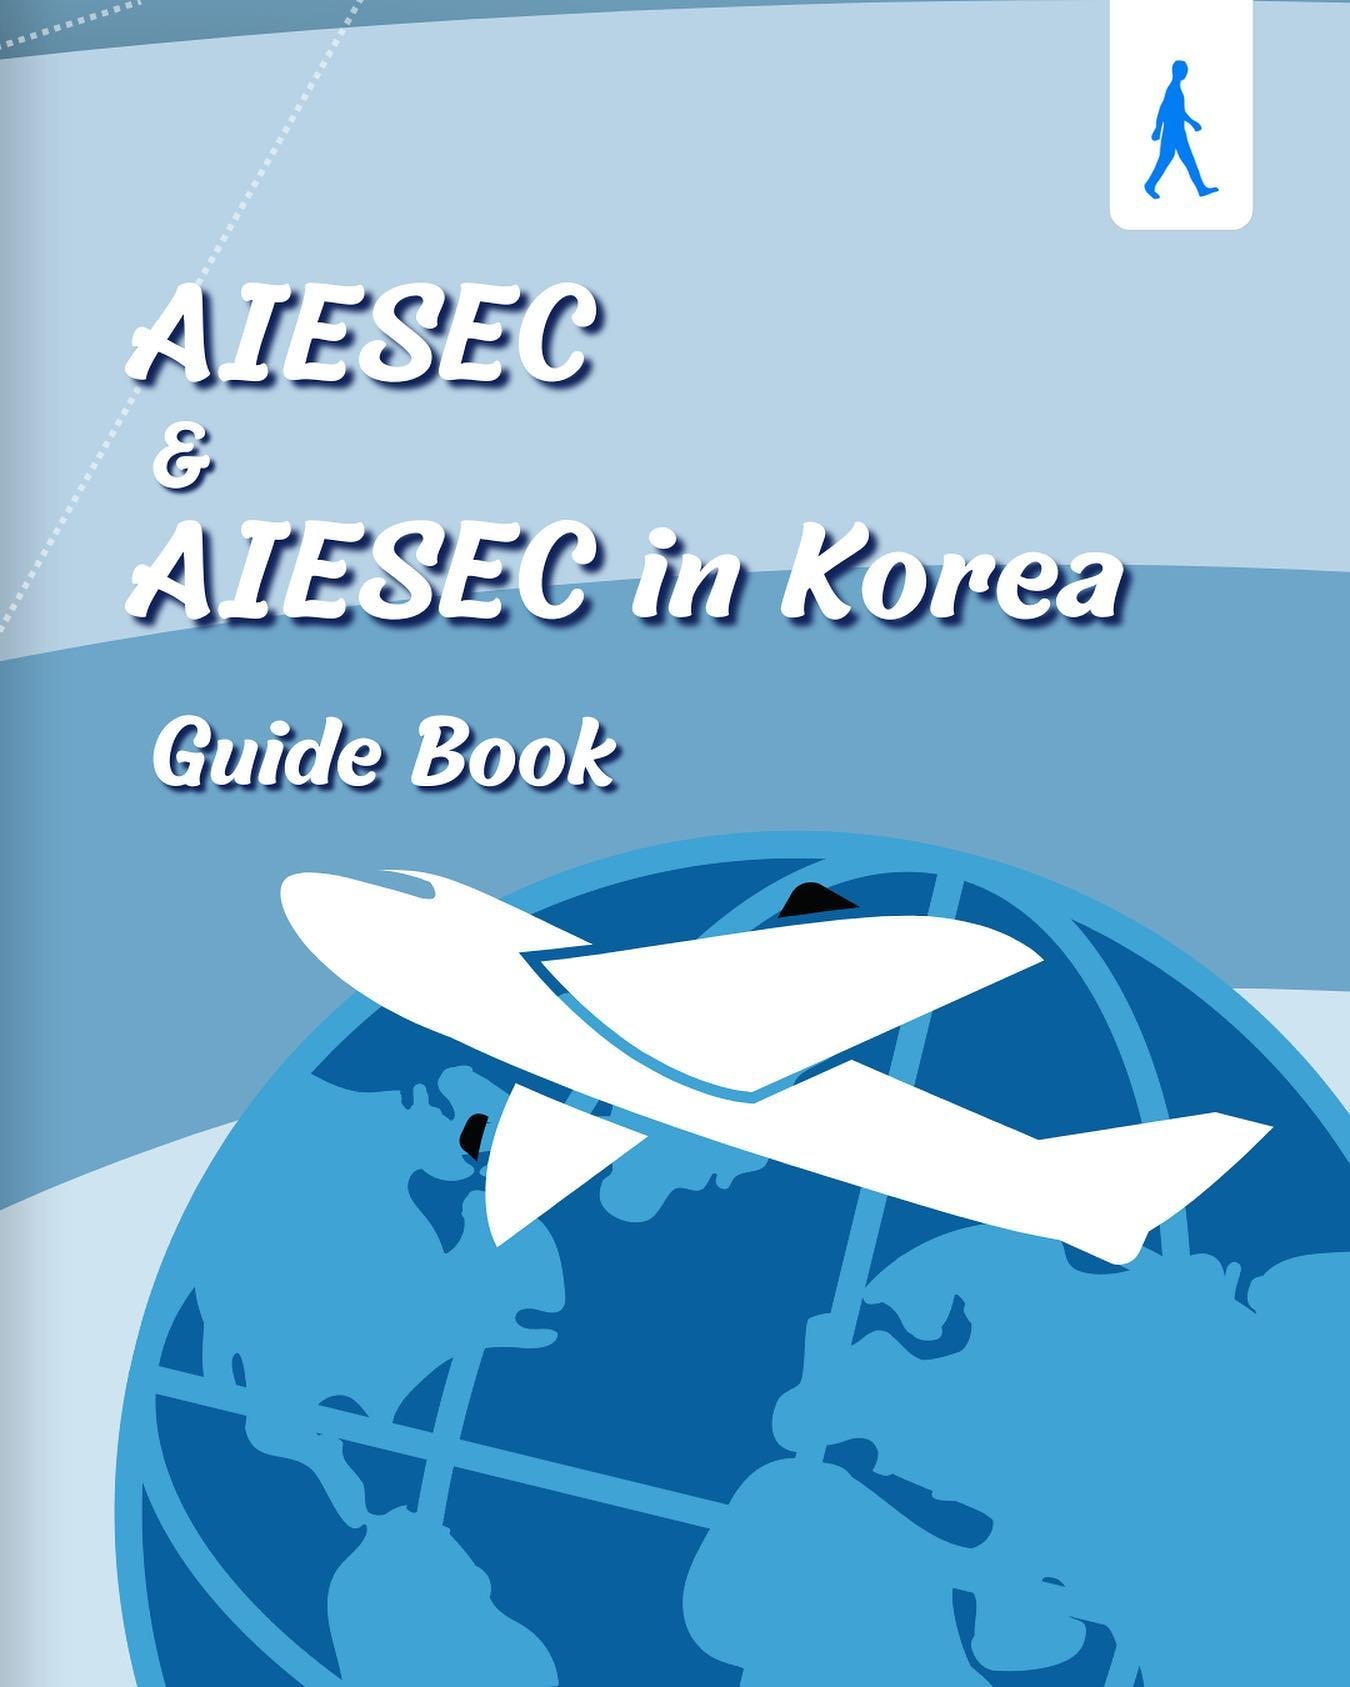 안녕하세요, AIESEC in Korea입니다.
AIESEC in Korea는 국내 14개 대학 지부와 함께
 &lsquo;세계 평화와 인간 잠재력의 실현&rsquo;이라는 AIESEC 비전을 
달성하기 위해 다양한 노력을 기울이고 있습니다! 
​
아직 AIESEC과 AIESEC in Korea가 어떤 곳인지 
감이 잘 안 잡히시는 분들을 위해
&rsquo;AIESEC &amp; AIESEC in Korea 안내책자📖&lsquo;를 제작했습니